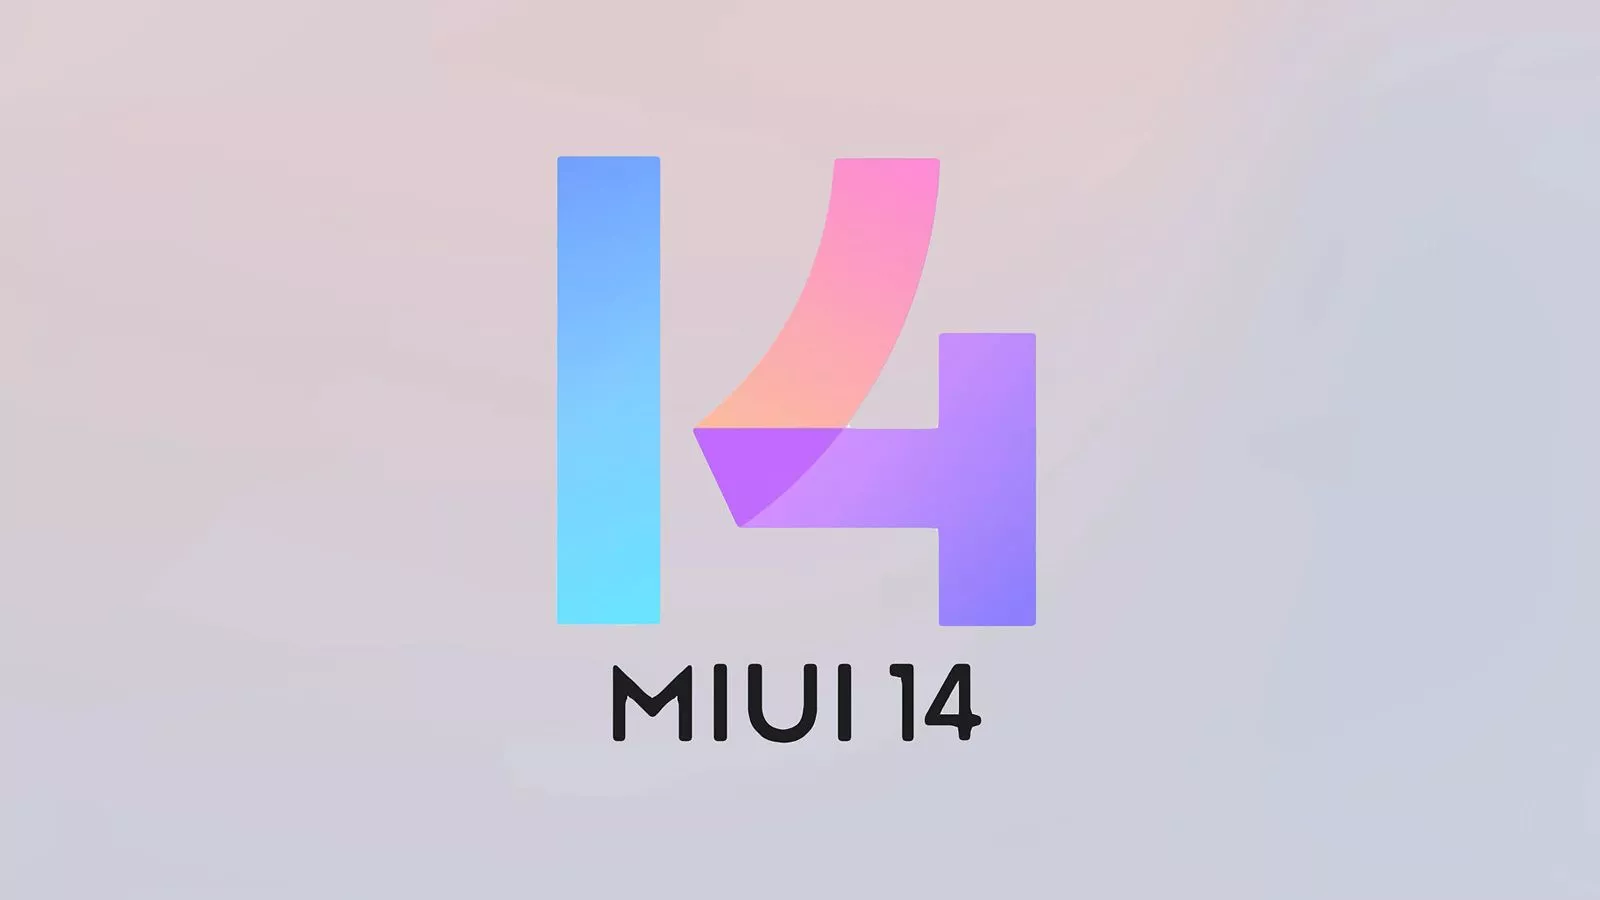 18 smartfonów Xiaomi ma otrzymać globalnie stabilny firmware MIUI 14 do końca marca - opublikowano oficjalną listę